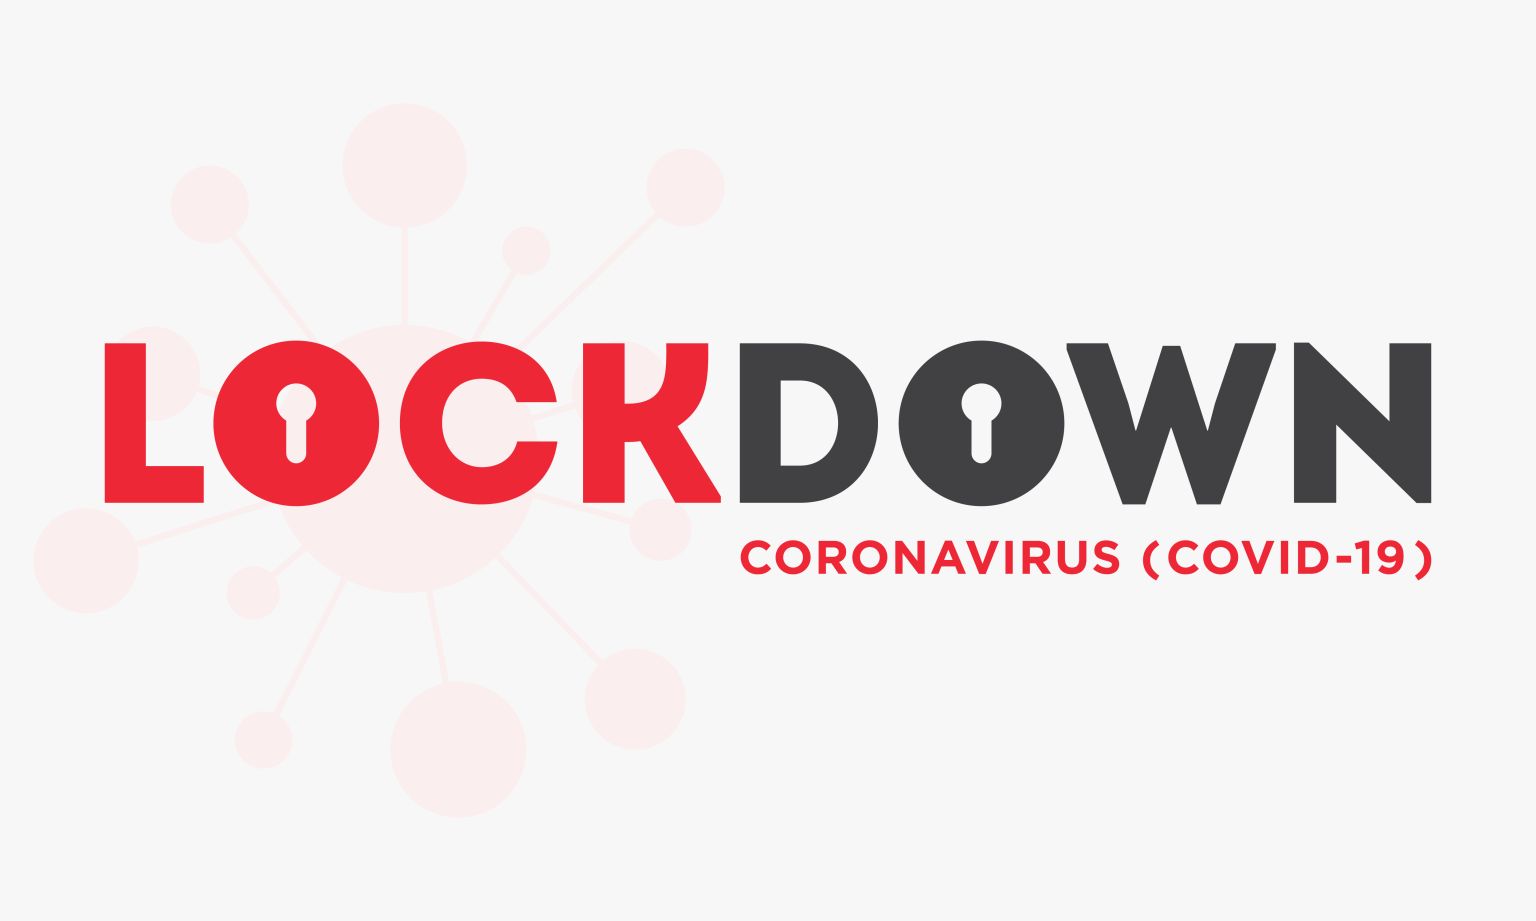 Lockdown-Mietzuschüsse aus Coronahilfen werden zurückgefordert